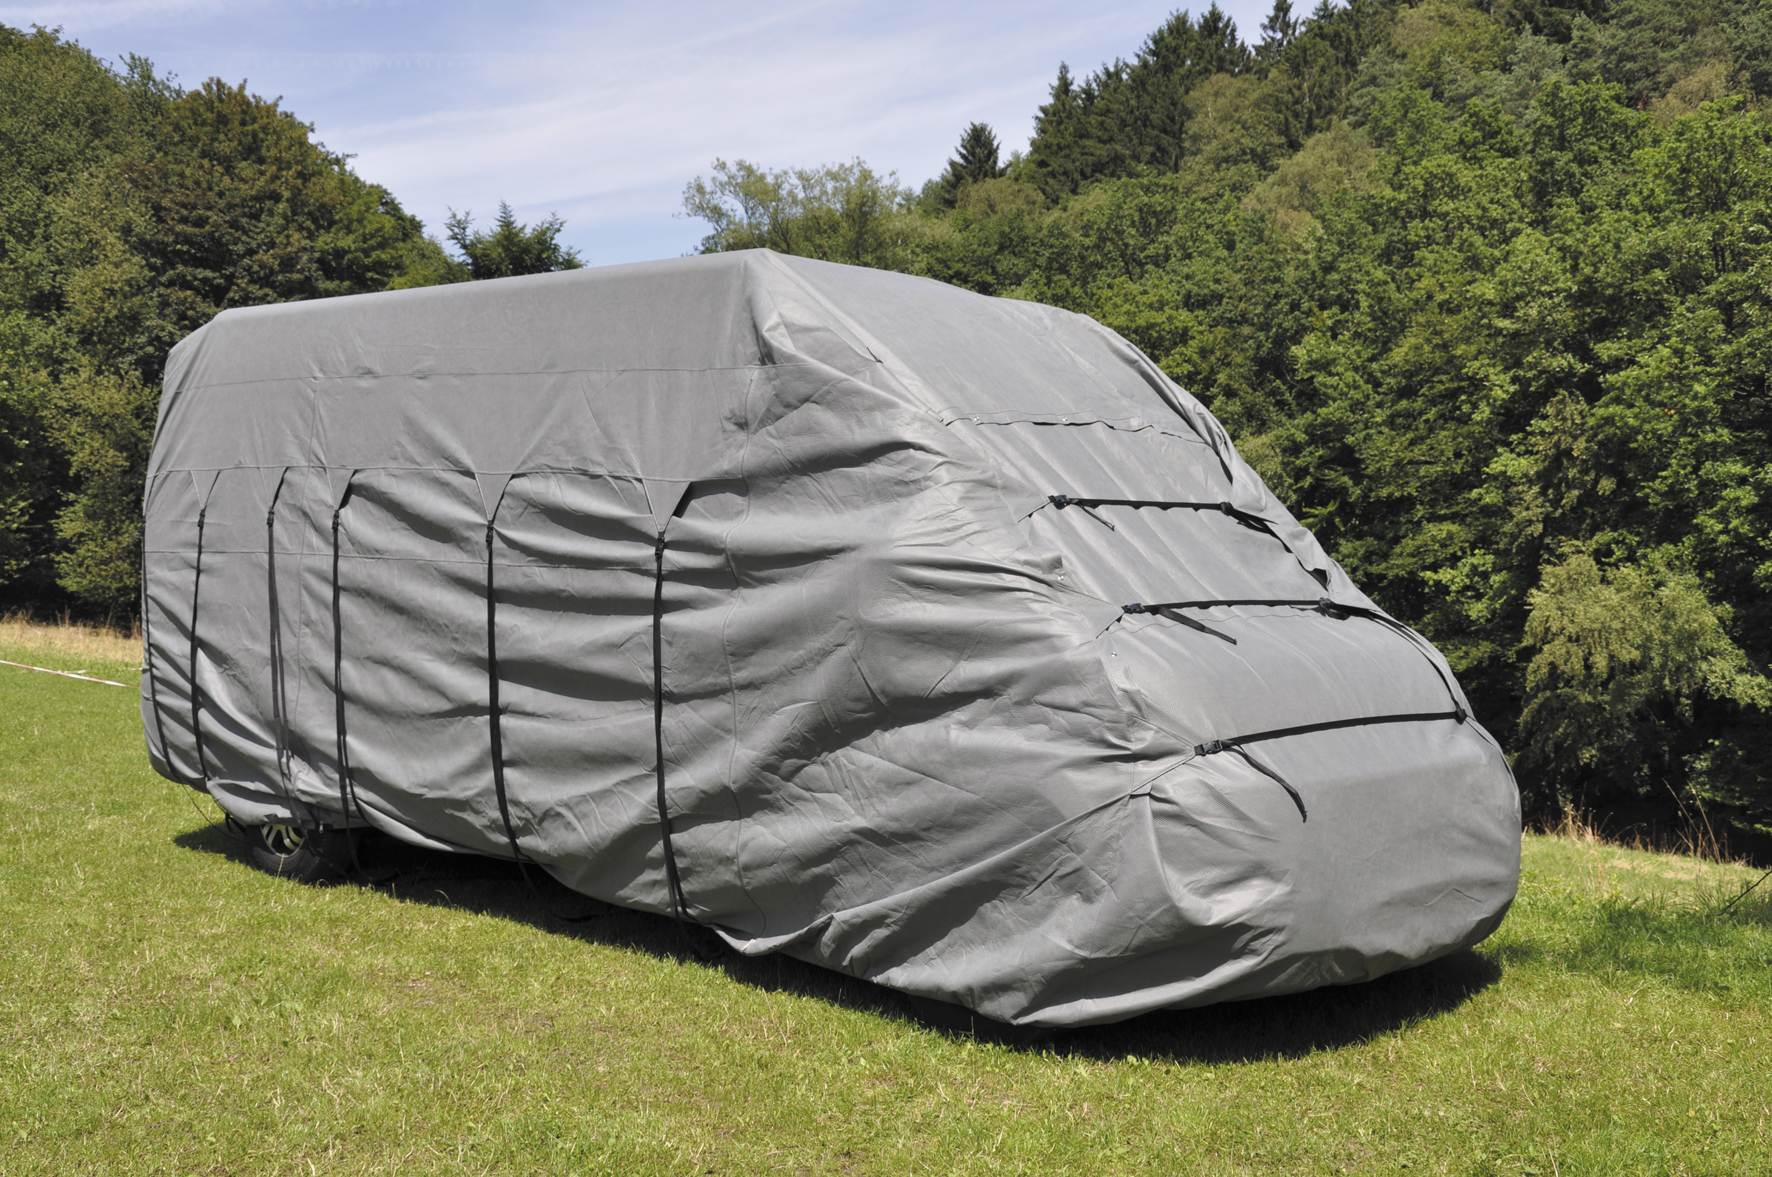 Housse protection pour camping car - Équipement caravaning